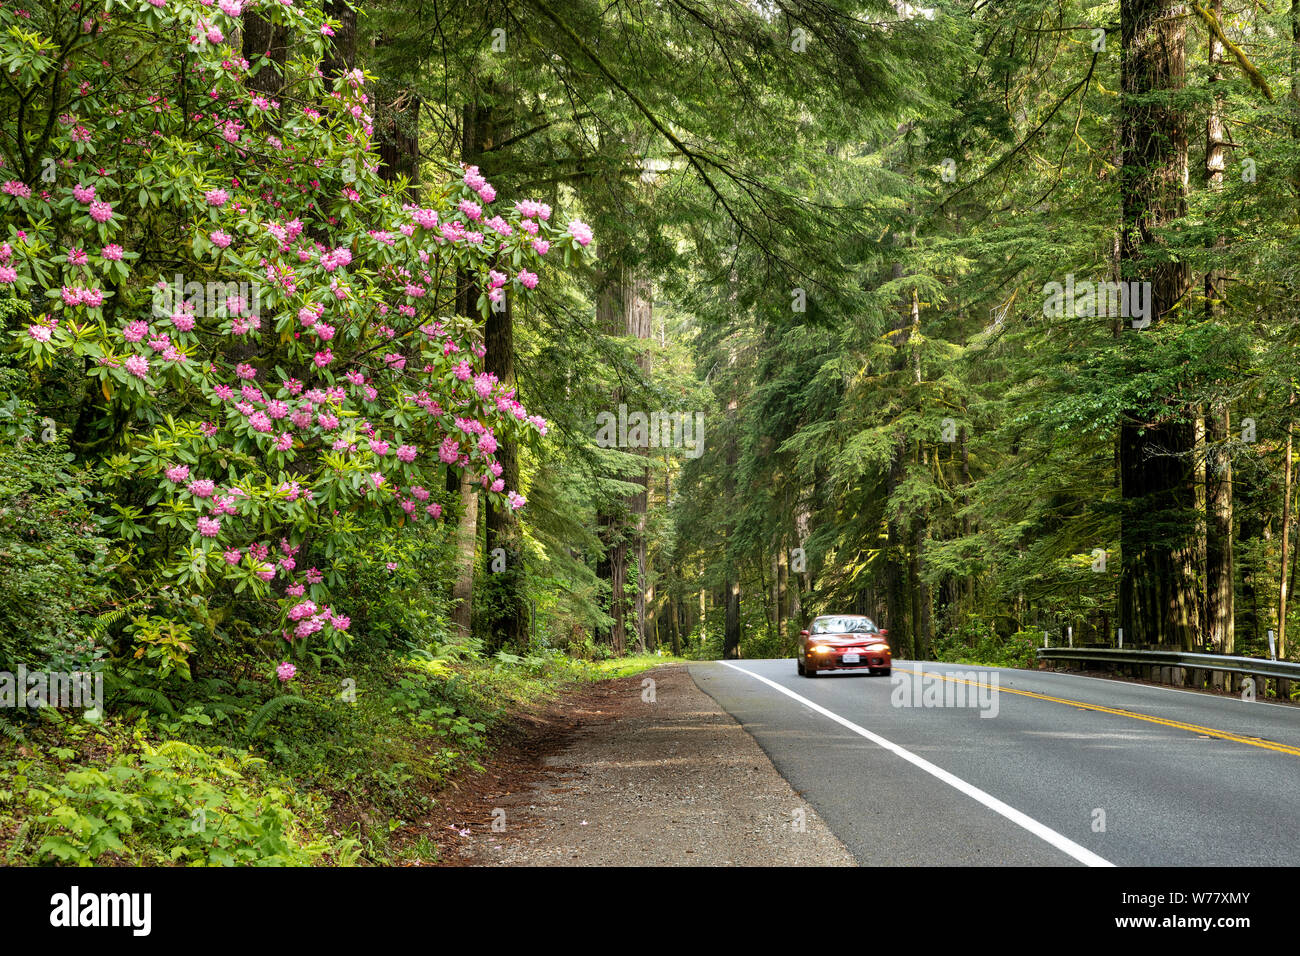 CA03457-00...CALIFORNIE - US Highway 199 près de Crescent City passe à travers des bosquets de séquoias et de rhododendrons. Banque D'Images